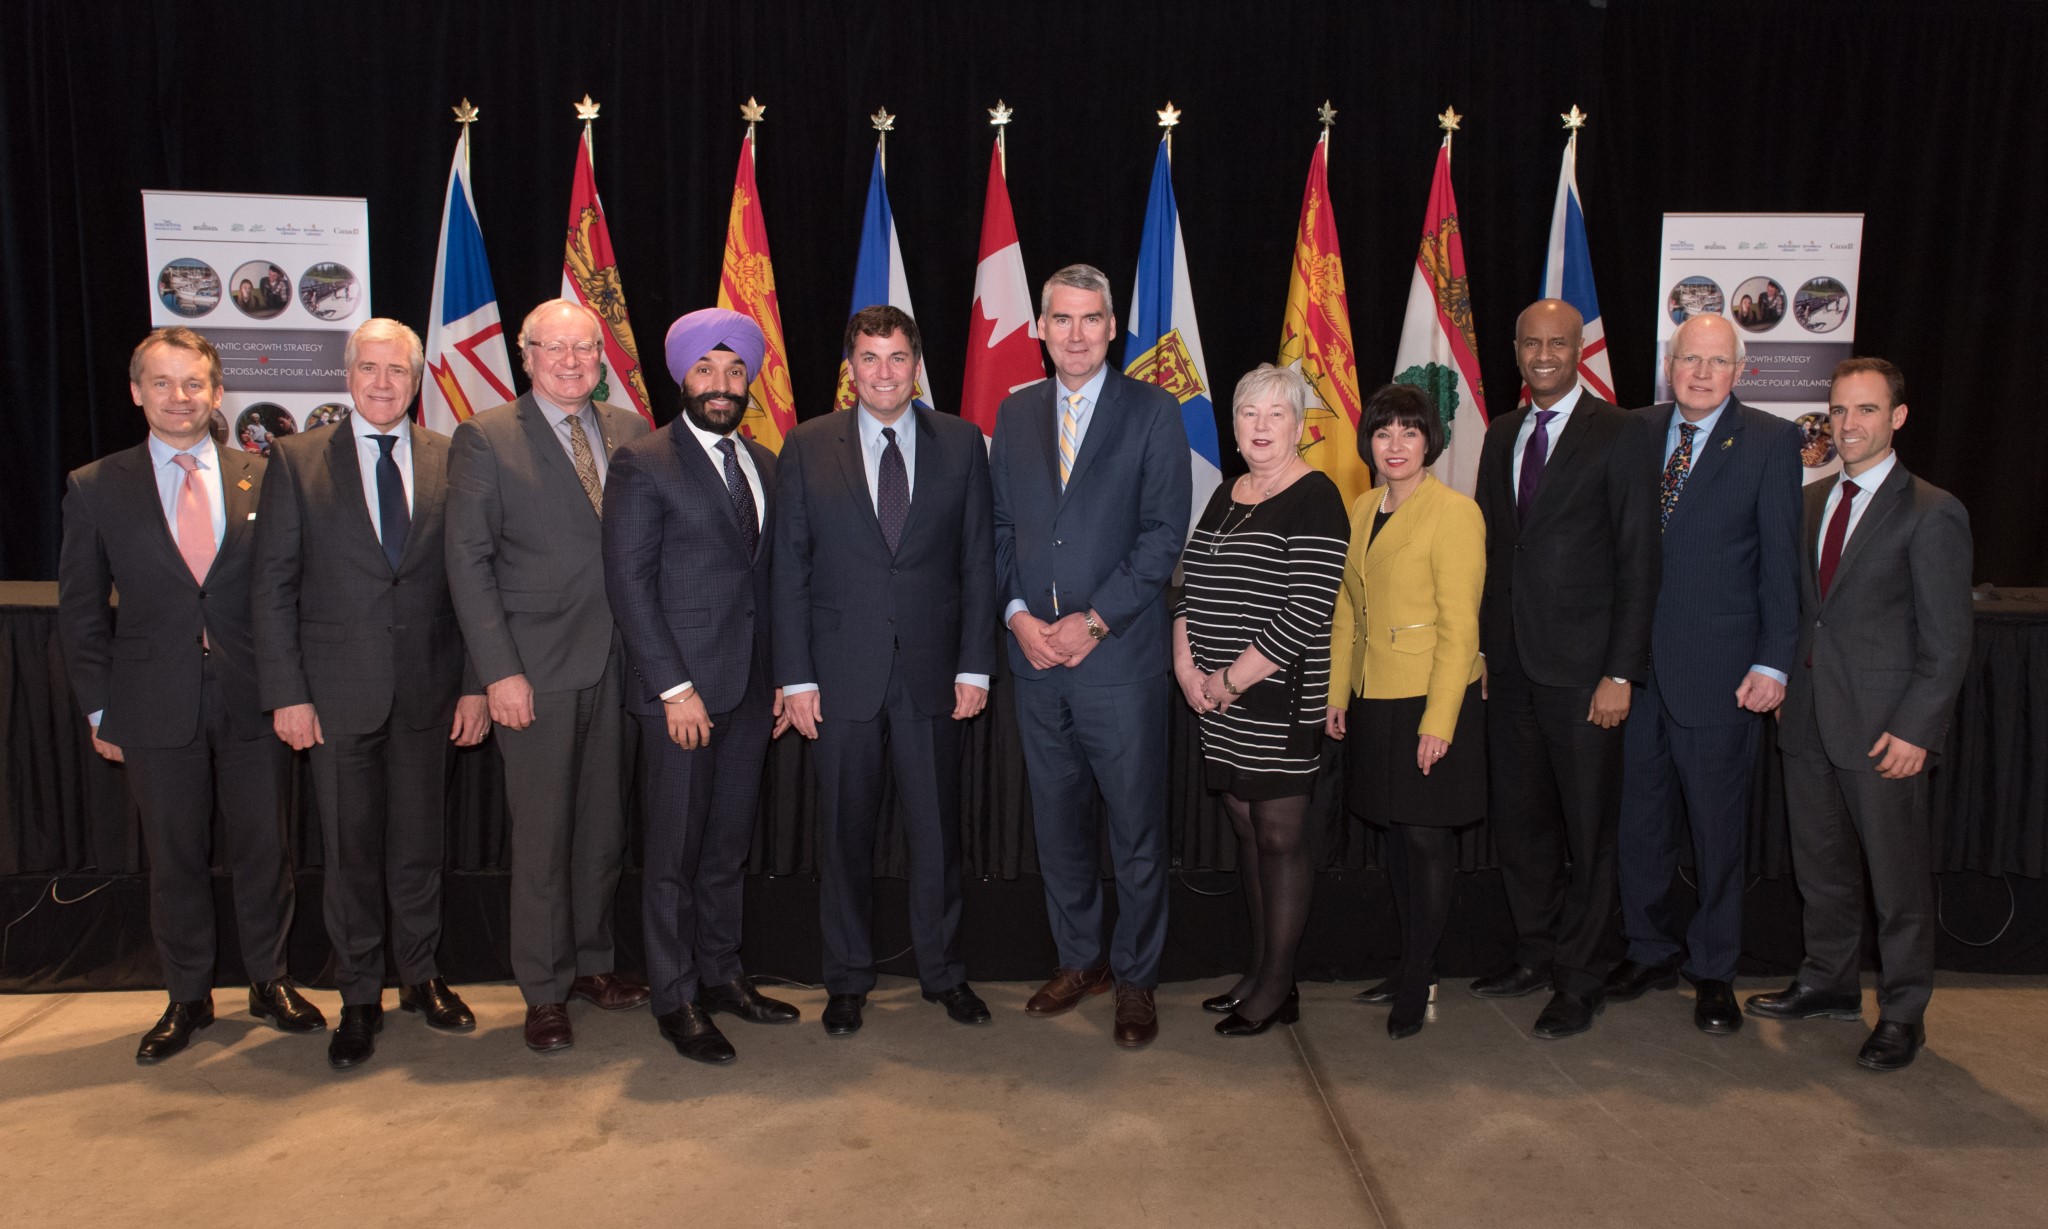 Le 1er mars 2019 – Les ministres et premiers ministres étaient à Halifax, en Nouvelle-Écosse, pour discuter des progrès de la Stratégie de croissance pour l’Atlantique et des initiatives stratégiques visant à faire croître la région de l’Atlantique. De gauche à droite : Seamus O’Regan, ministre des Services aux Autochtones; Dwight Ball, premier ministre de Terre-Neuve-et-Labrador; Wade MacLauchlan, premier ministre de l’Île-du-Prince-Édouard; Navdeep Bains, ministre de l’Innovation, des Sciences et du Développement économique et ministre responsable de l’APECA; Dominic LeBlanc, ministre des Affaires intergouvernementales et du Nord et du Commerce intérieur; Stephen McNeil, premier ministre de la Nouvelle-Écosse; Bernadette Jordan, ministre du Développement économique rural; Ginette Petitpas Taylor, ministre de la Santé; Ahmed Hussen, ministre de l’Immigration, des Réfugiés et de la Citoyenneté; Greg Thompson, ministre responsable des Affaires intergouvernementales du Nouveau-Brunswick (représentant le premier ministre du Nouveau-Brunswick Blaine Higgs); et Matt DeCourcey, Secrétaire parlementaire du ministre de l'Immigration, des Réfugiés et de la Citoyenneté.